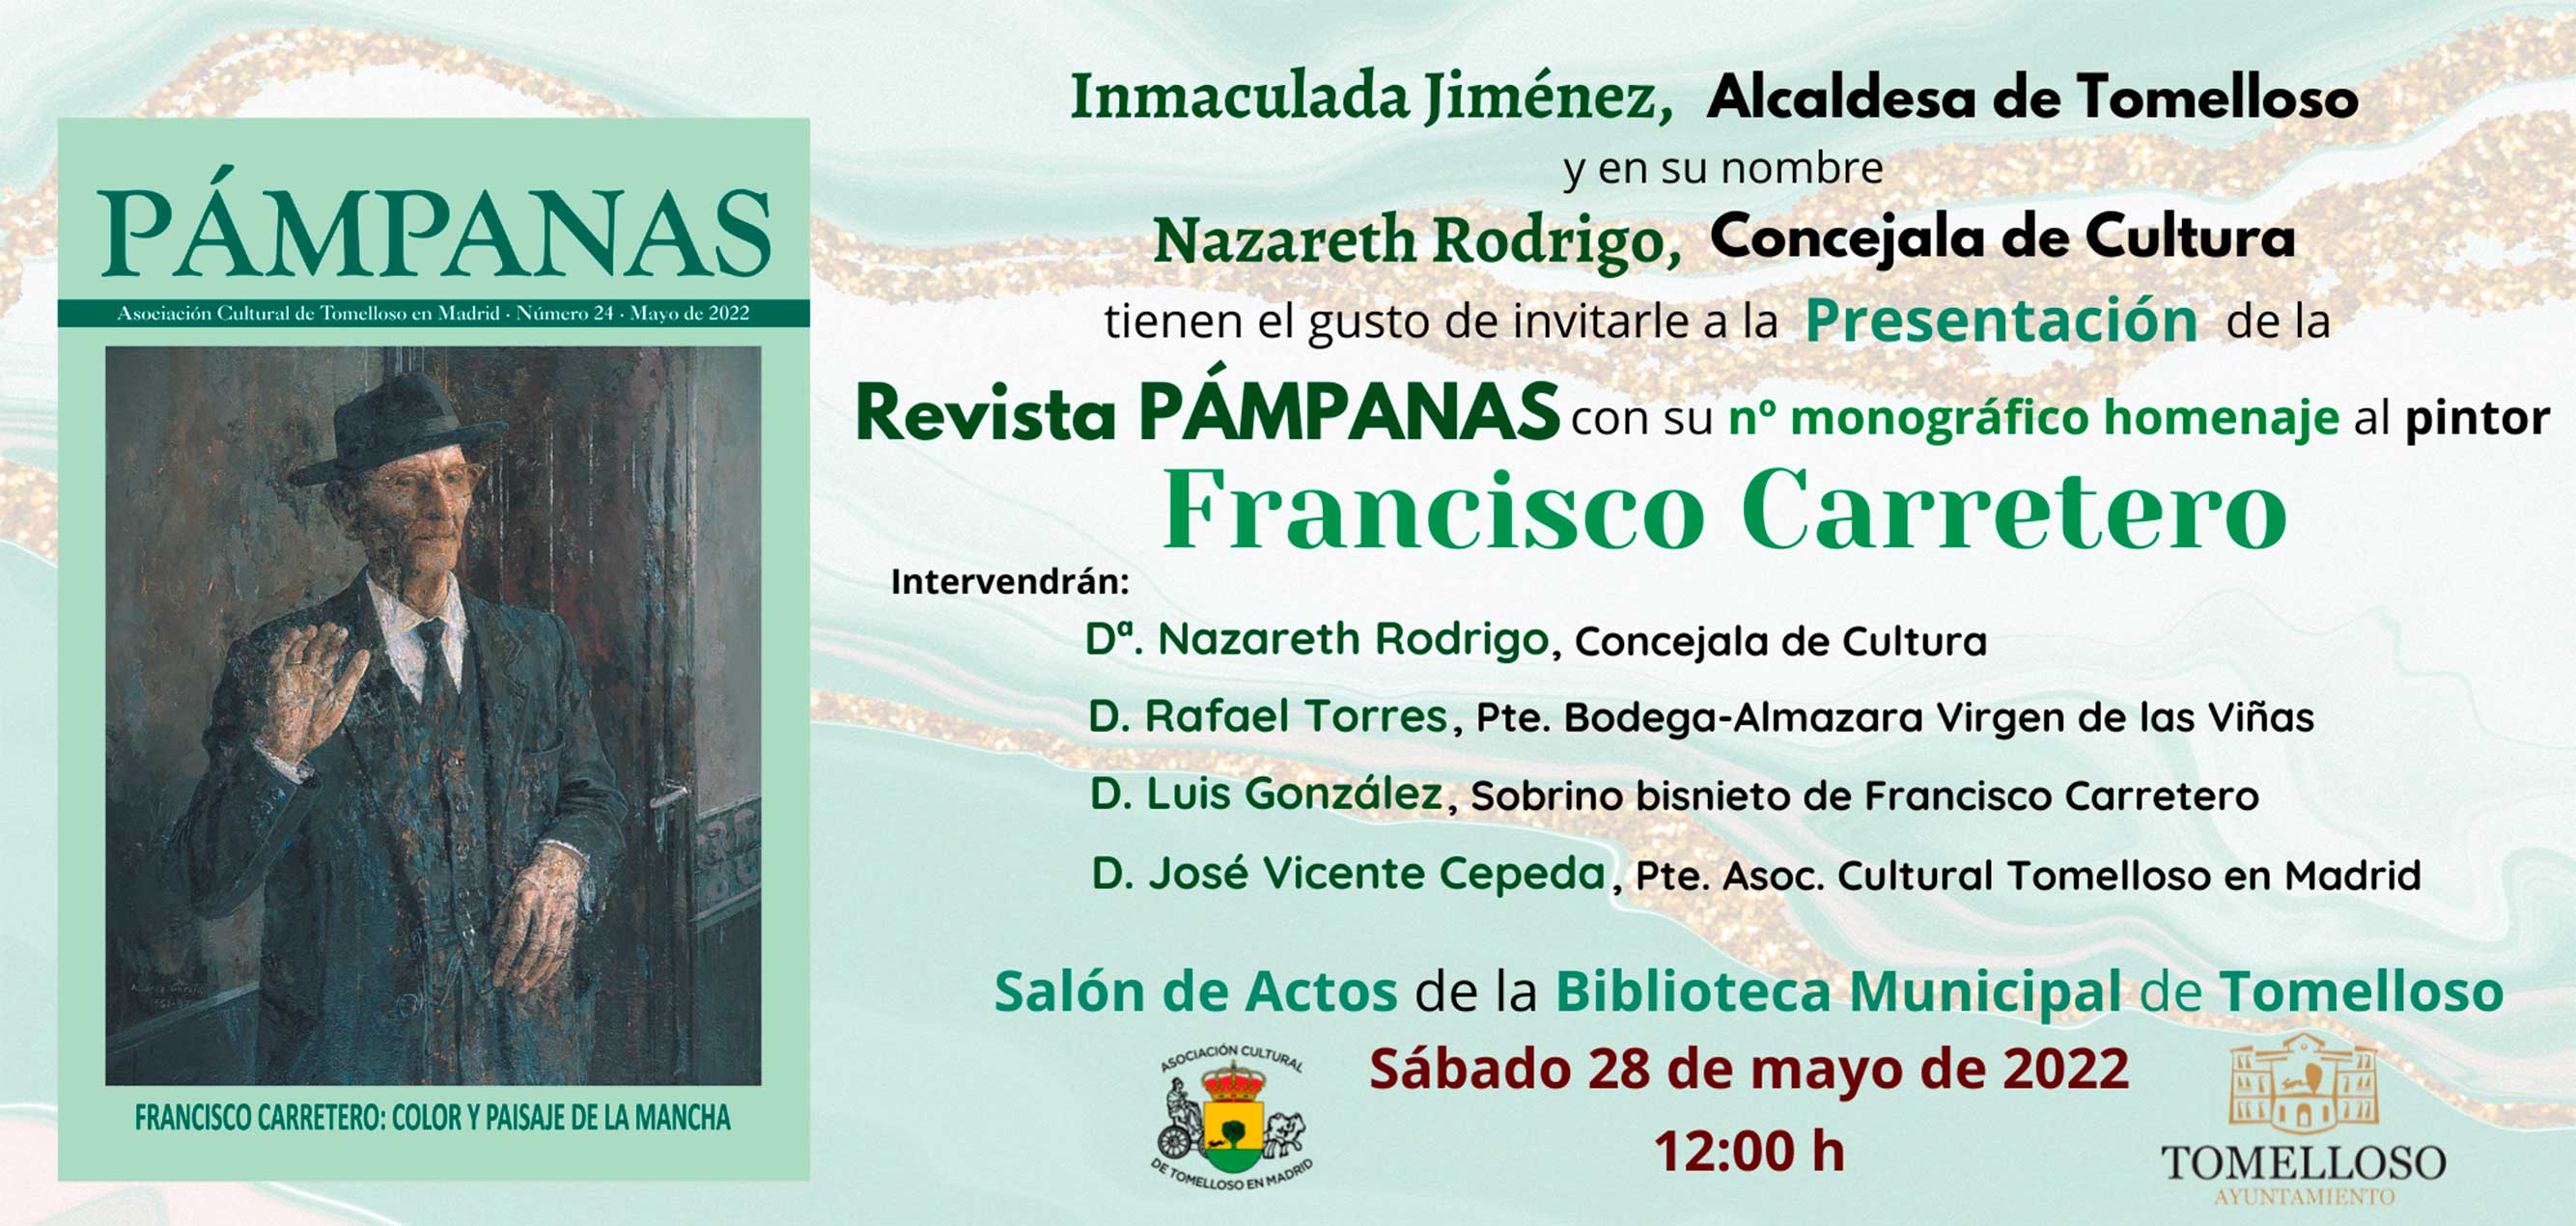  Este próximo sábado se presentará en Tomelloso un número monográfico de la revista Pámpanas dedicado a Francisco Carretero Cepeda, en conmemoración del 60 aniversario de su fallecimiento